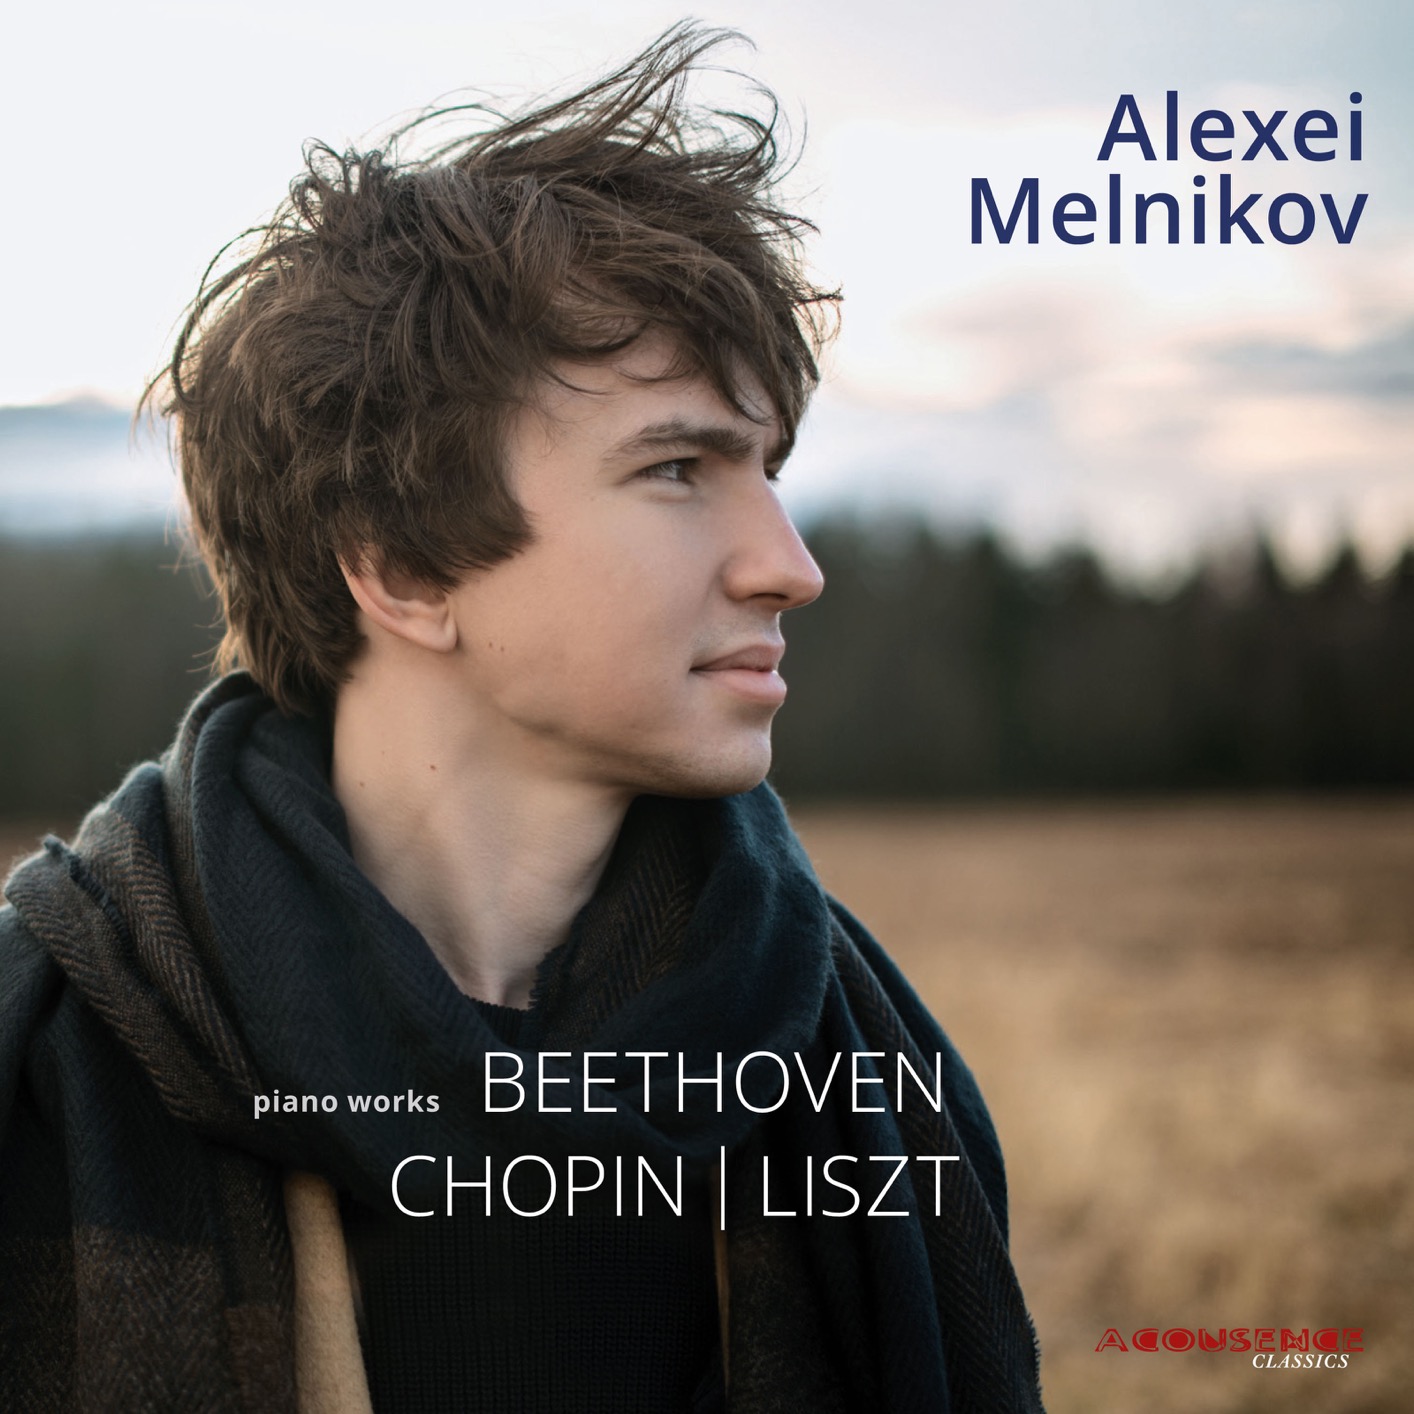 Alexei Melnikov – Beethoven, Chopin & Liszt: Piano Works (2018) [FLAC 24bit/96kHz]